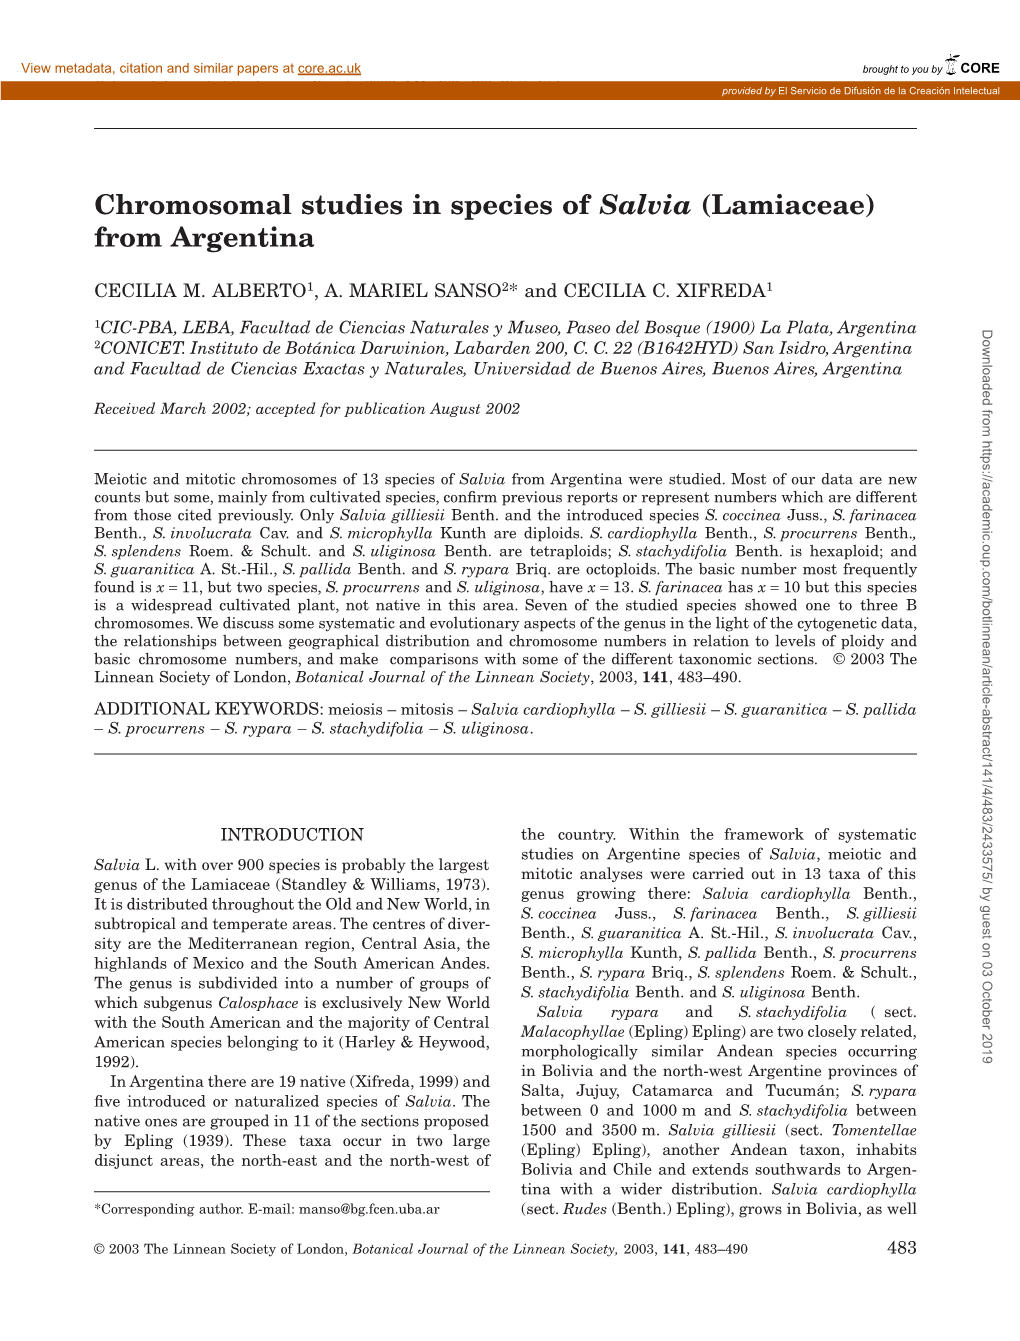 Chromosomal Studies in Species of Salvia (Lamiaceae) from Argentina